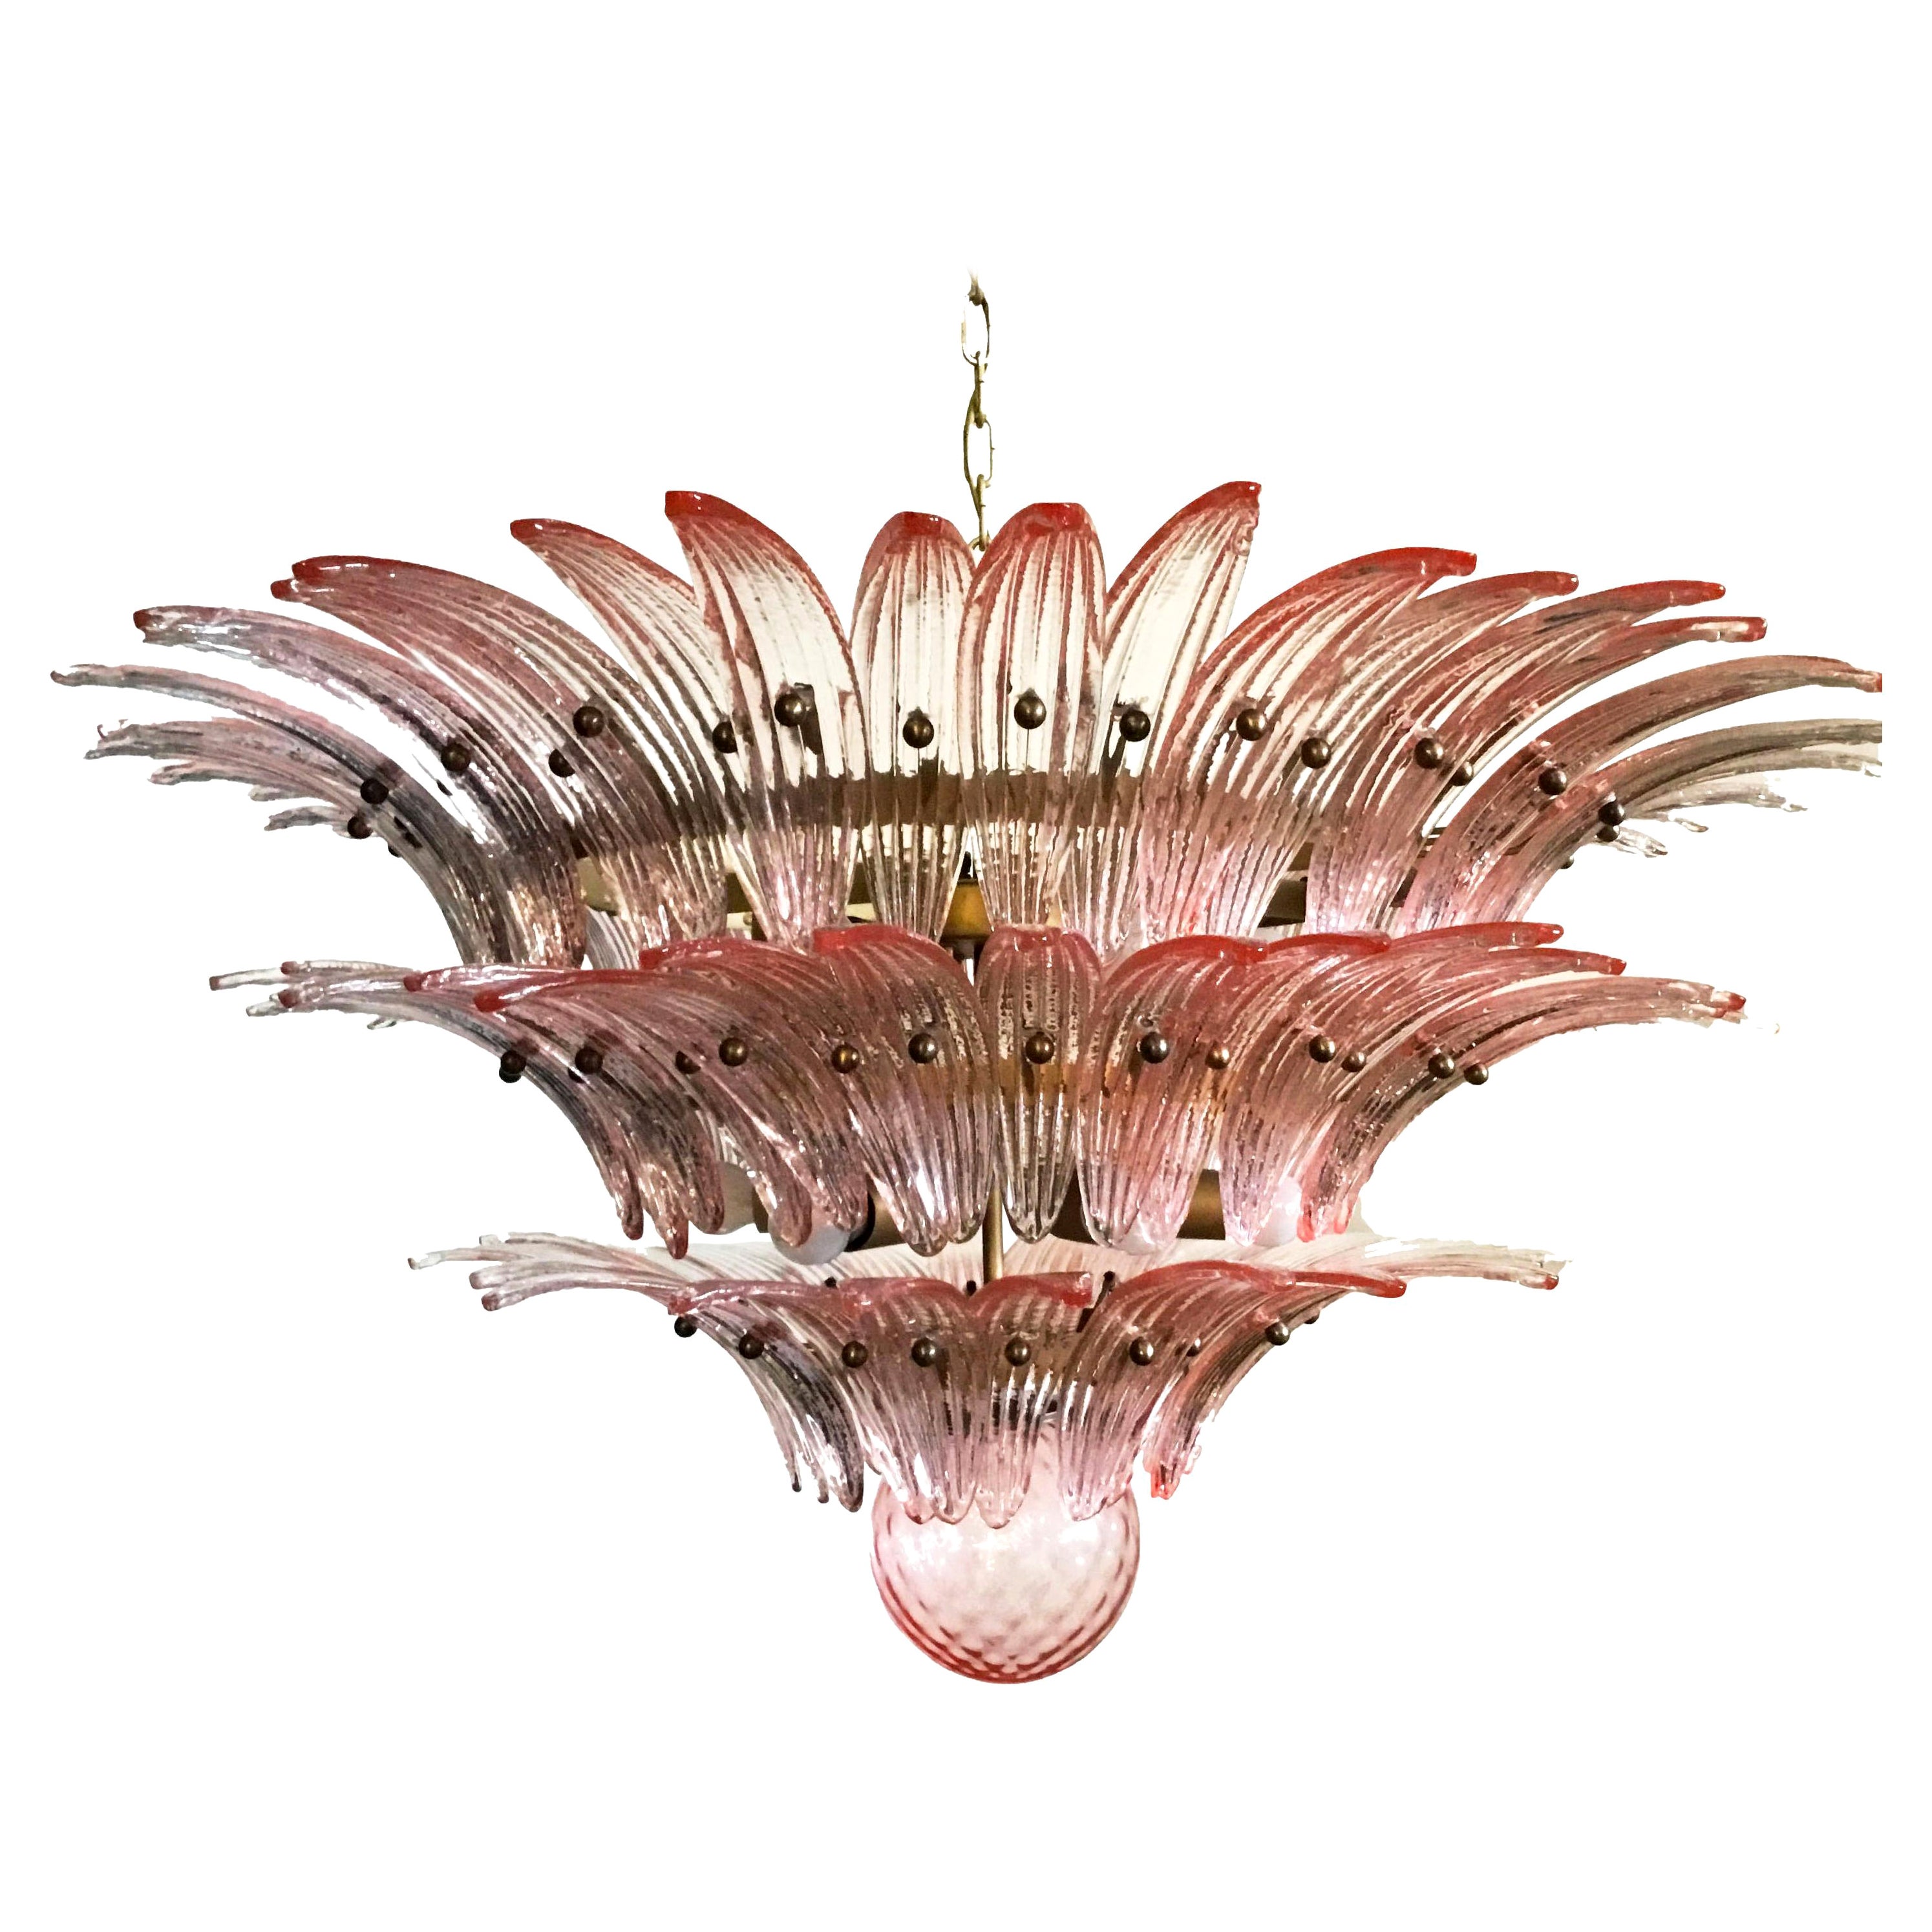 Paar Palmette Deckenleuchte von 104 Murano rosa Gläser in einem goldenen Metallrahmen gemacht. Muranoglas in traditioneller Weise geblasen. Struktur aus goldfarbenem Metall.
Period:1980's
Abmessungen: 47,25 Zoll (120 cm) Höhe mit Kette; 25,60 Zoll